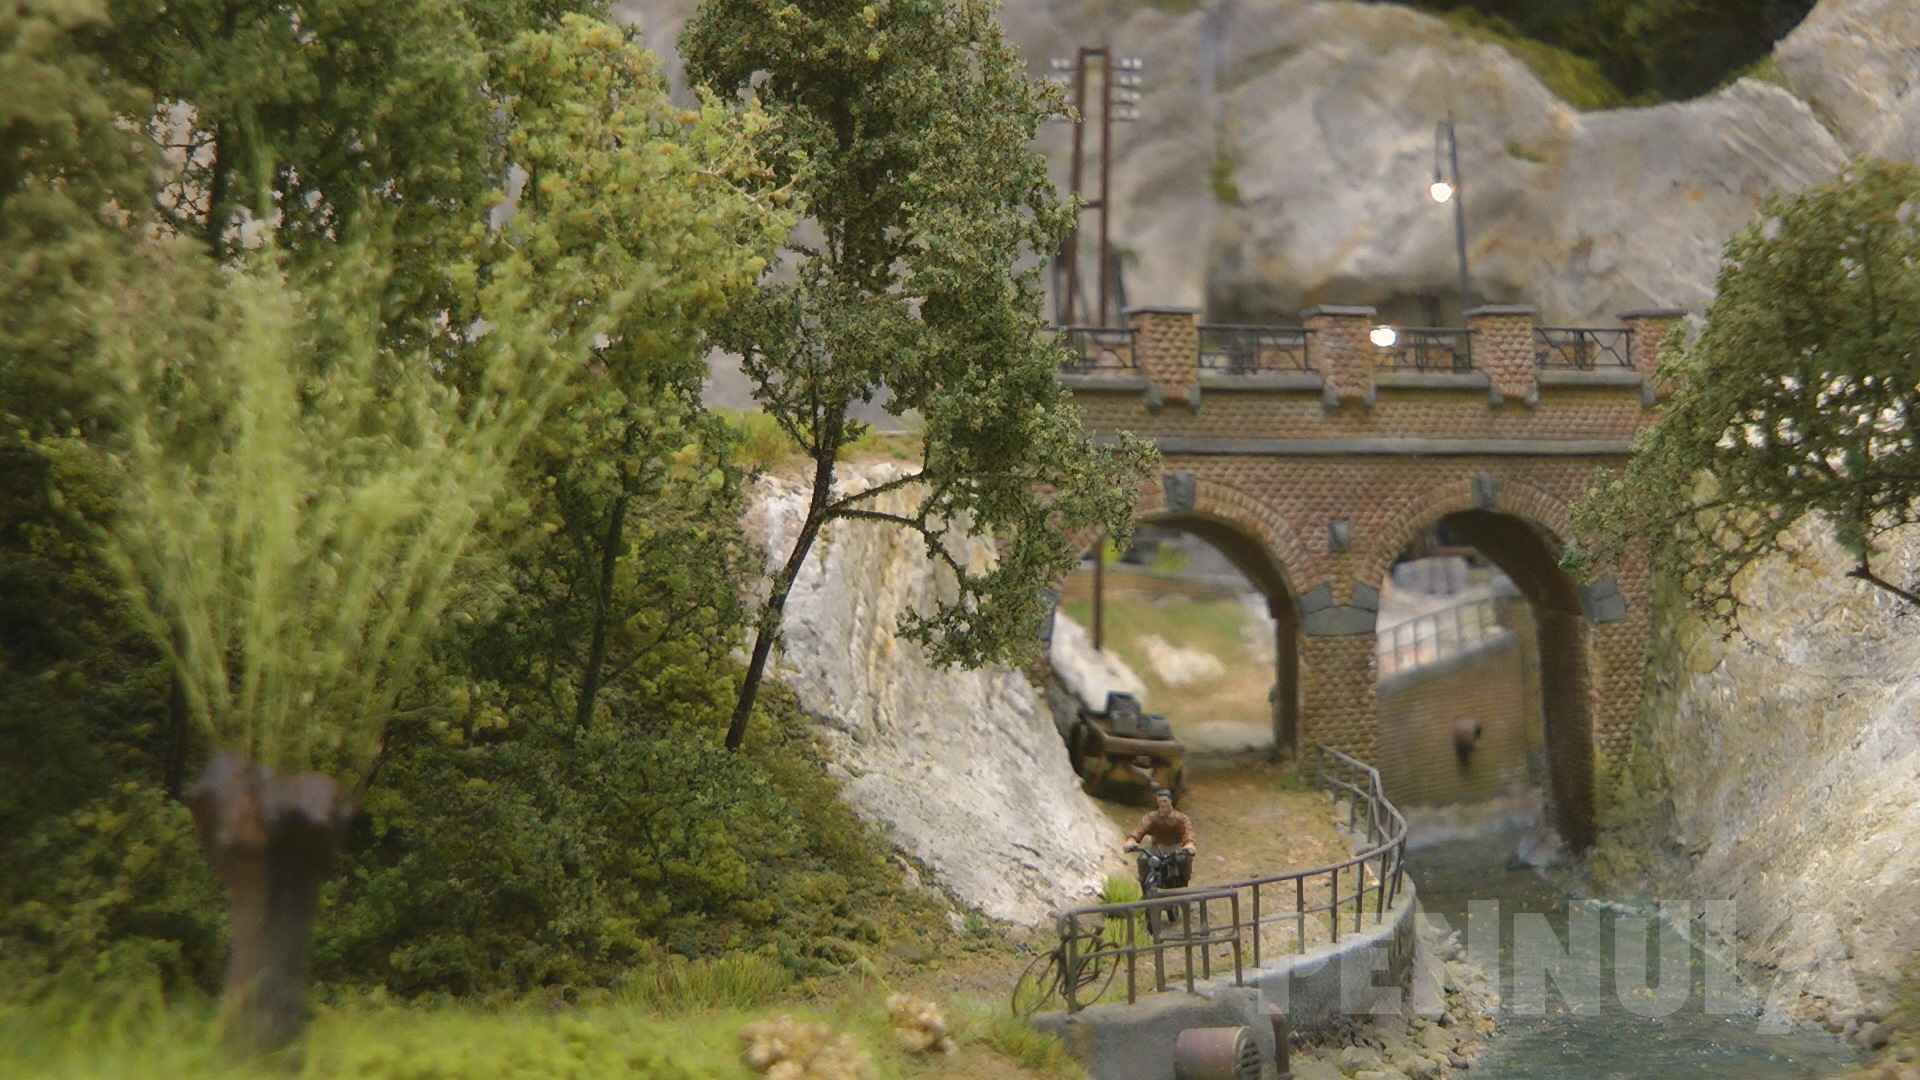 Straßenbahn Modellbau: Die historische Dampfstraßenbahn von La Roche-en-Ardenne in Belgien